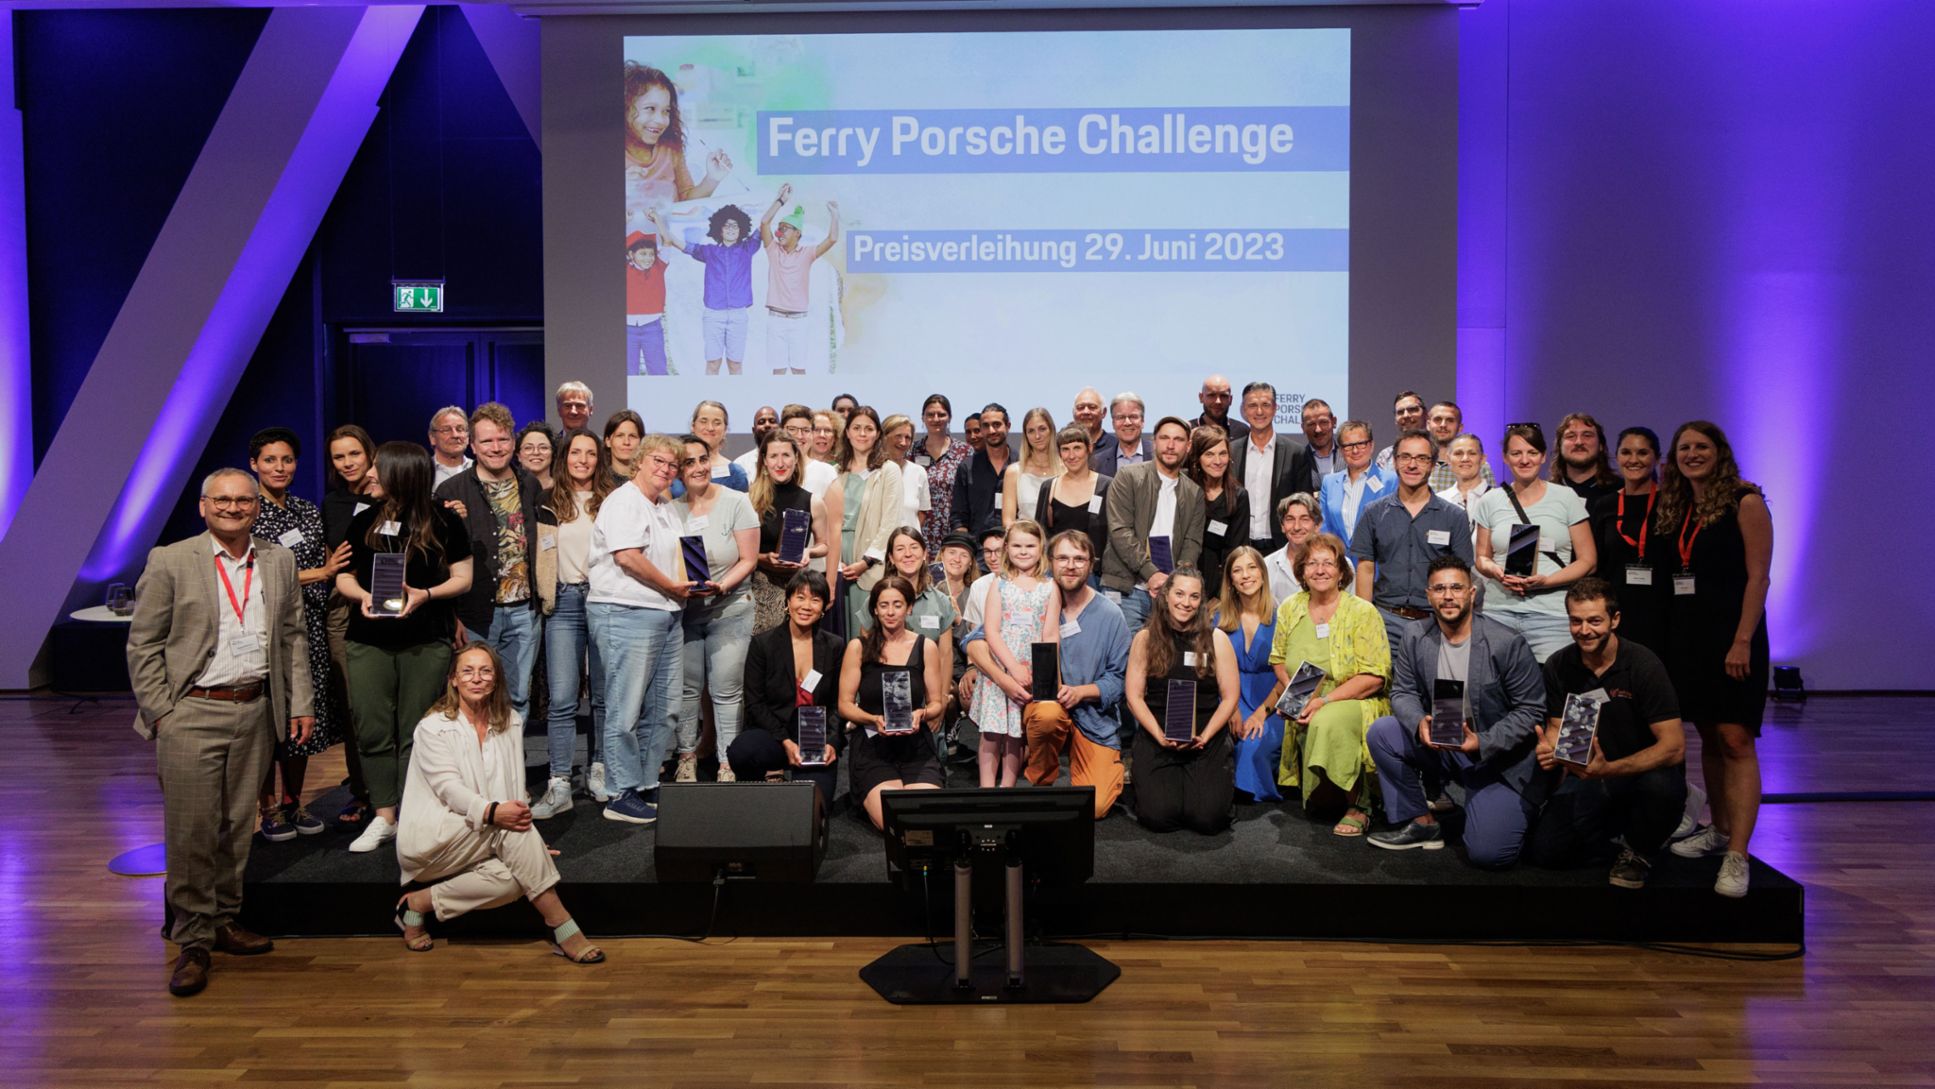 Ferry Porsche Challenge, Preisverleihung, 2023, Ferry-Porsche-Stiftung